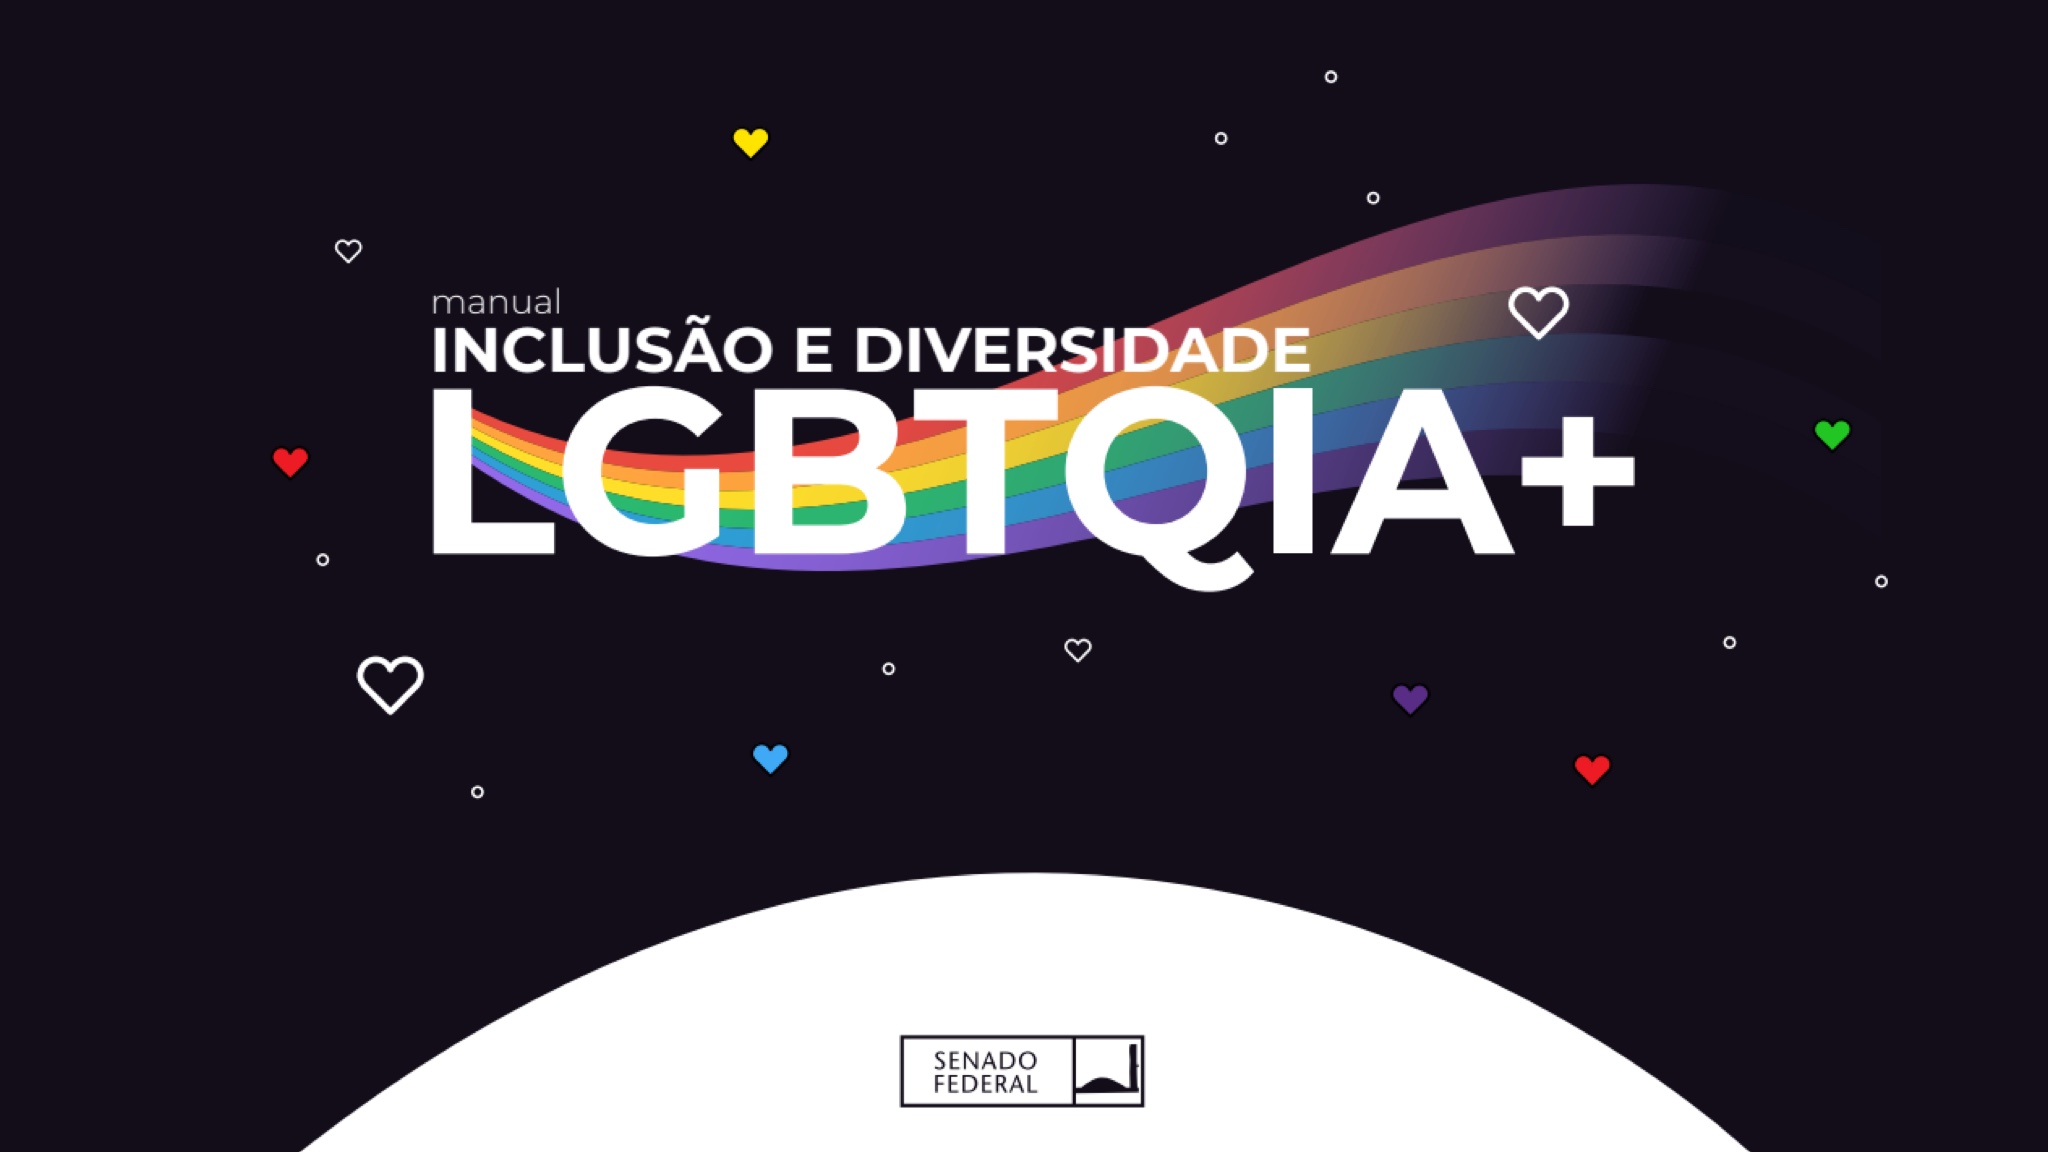 Manual - "Inclusão e Diversidade LGBTQIA+ "